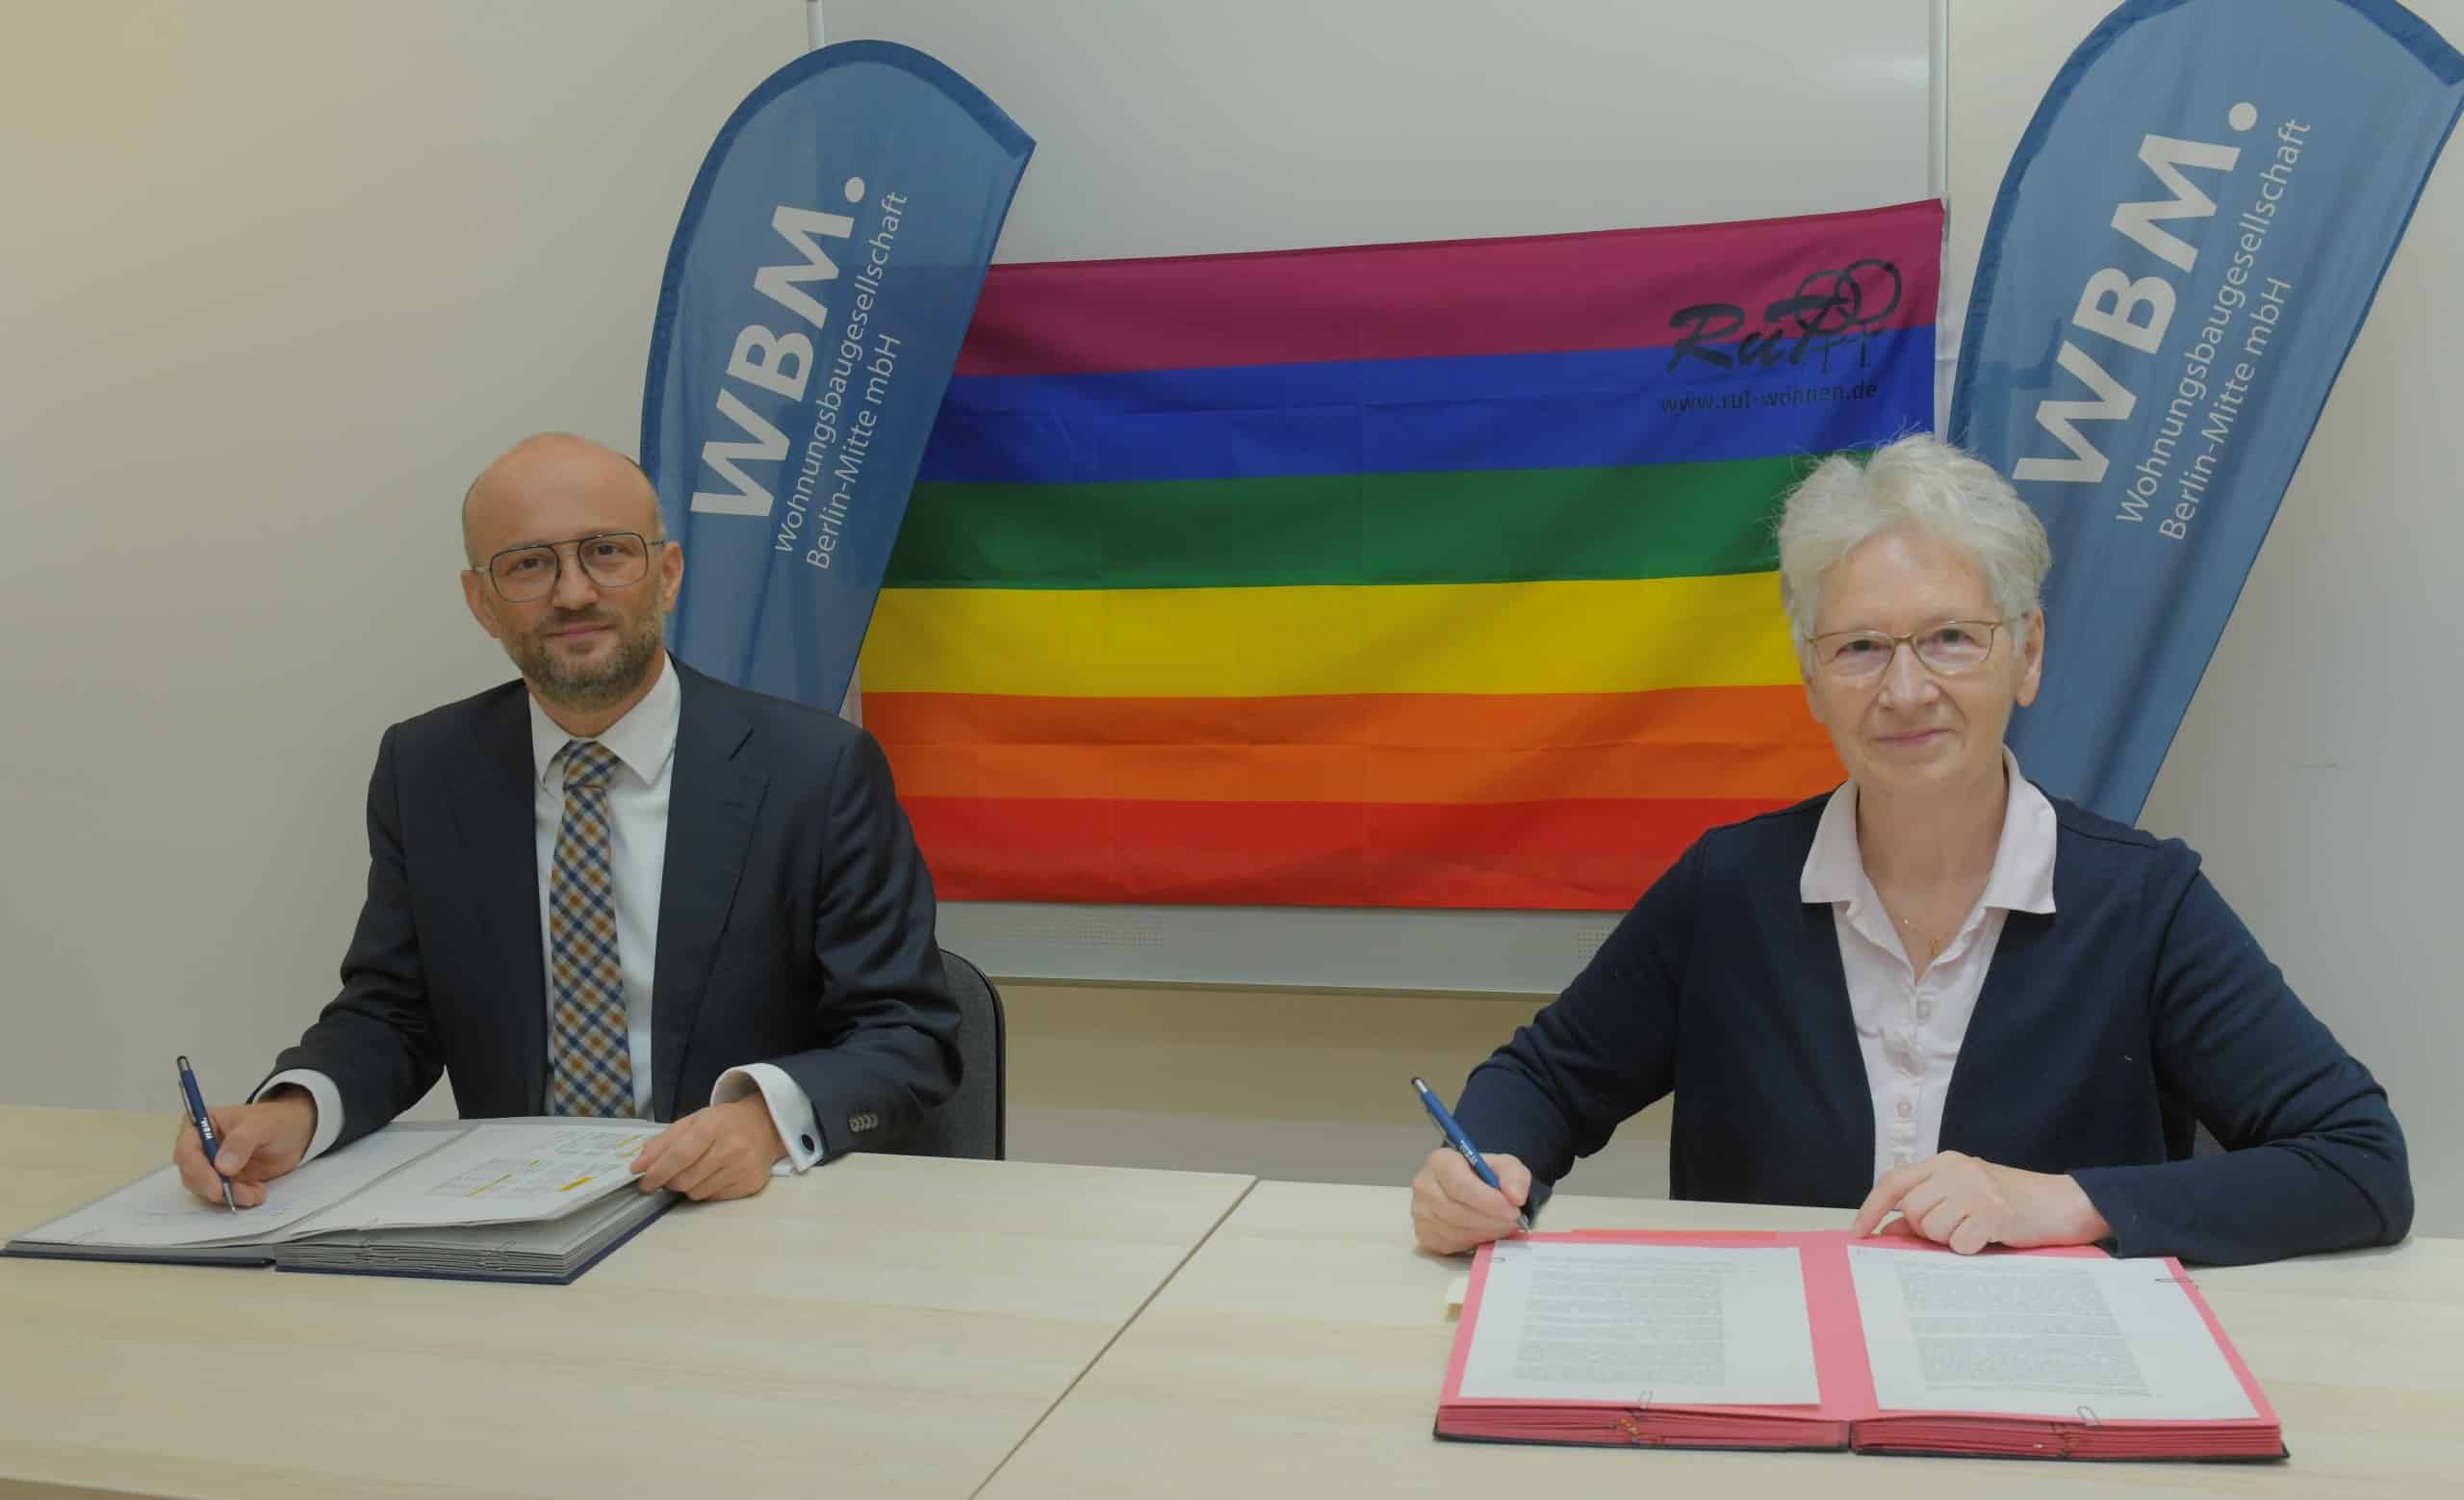 Jutta Brambach, Geschäftsführerin der RuT gGmbH und Steffen Helbig, Geschäftsführer WBM unterzeichnen den Vertrag. Sie sitzen vor einer Regenbogenflagge an einem Tisch. Vor ihnen liegen Vertragsunterlagen.